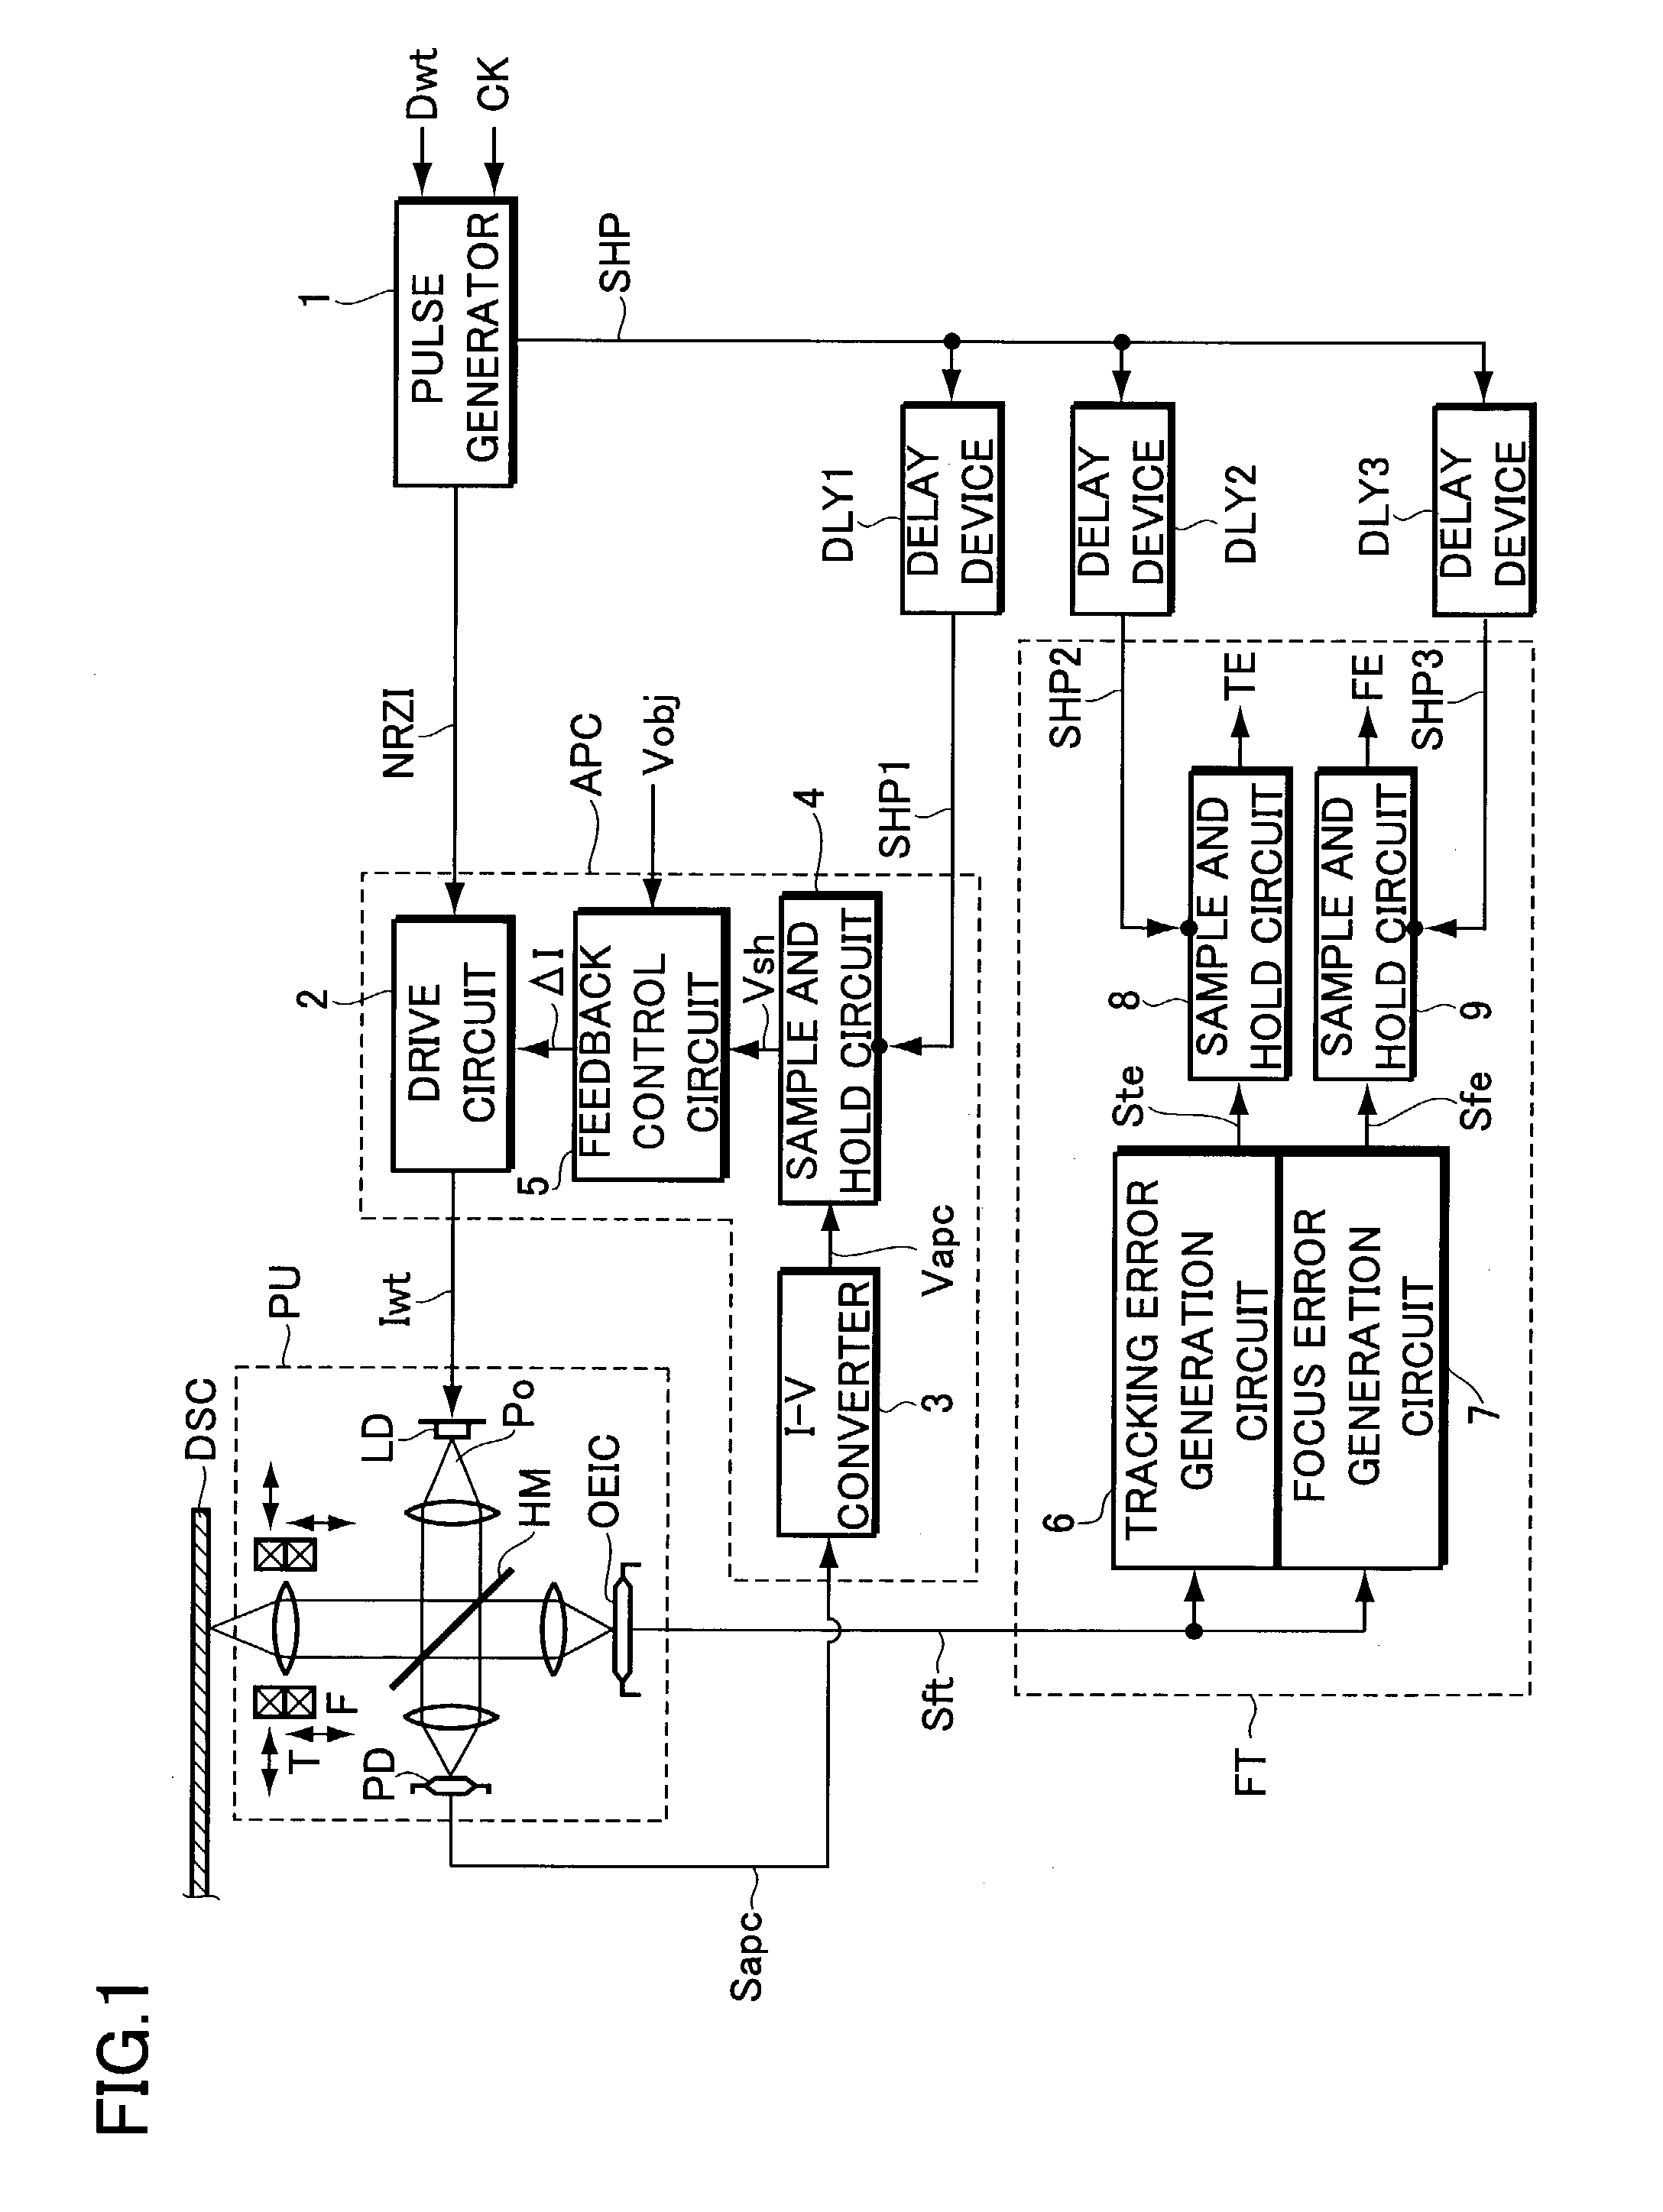 Information recording apparatus